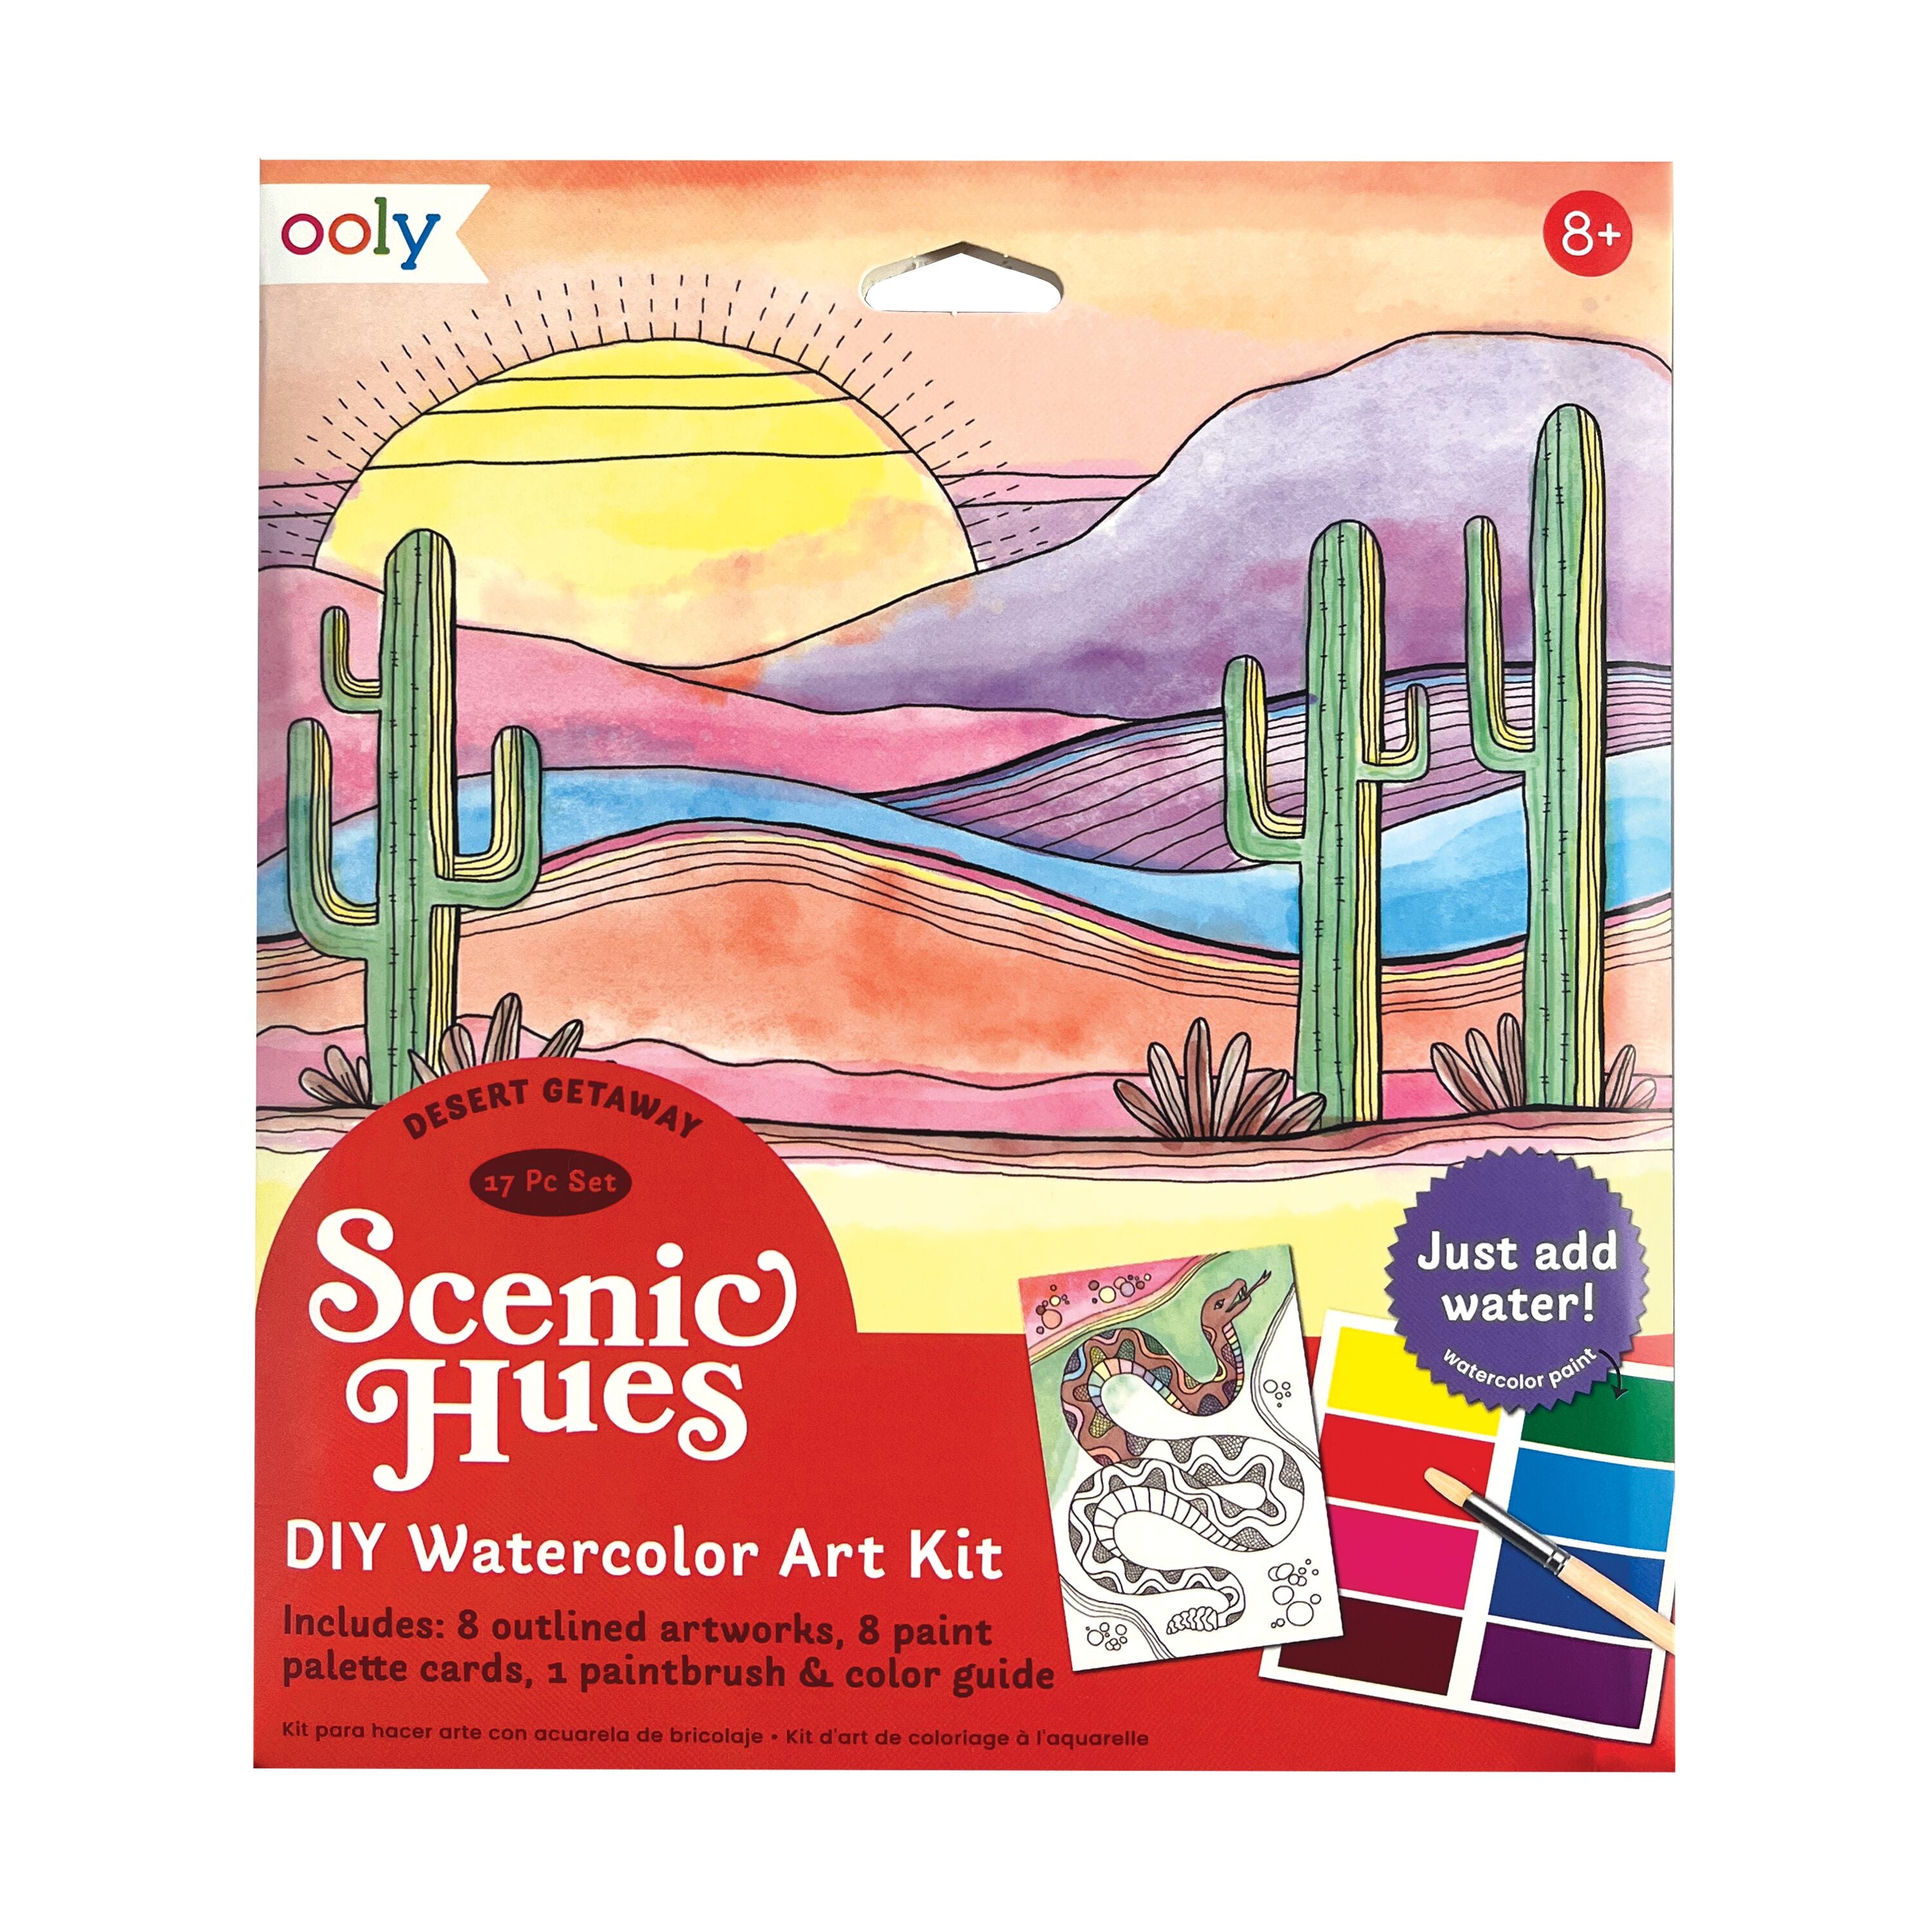 Scenic Hues D.I.Y. Watercolor Art Kit - Desert Getaway